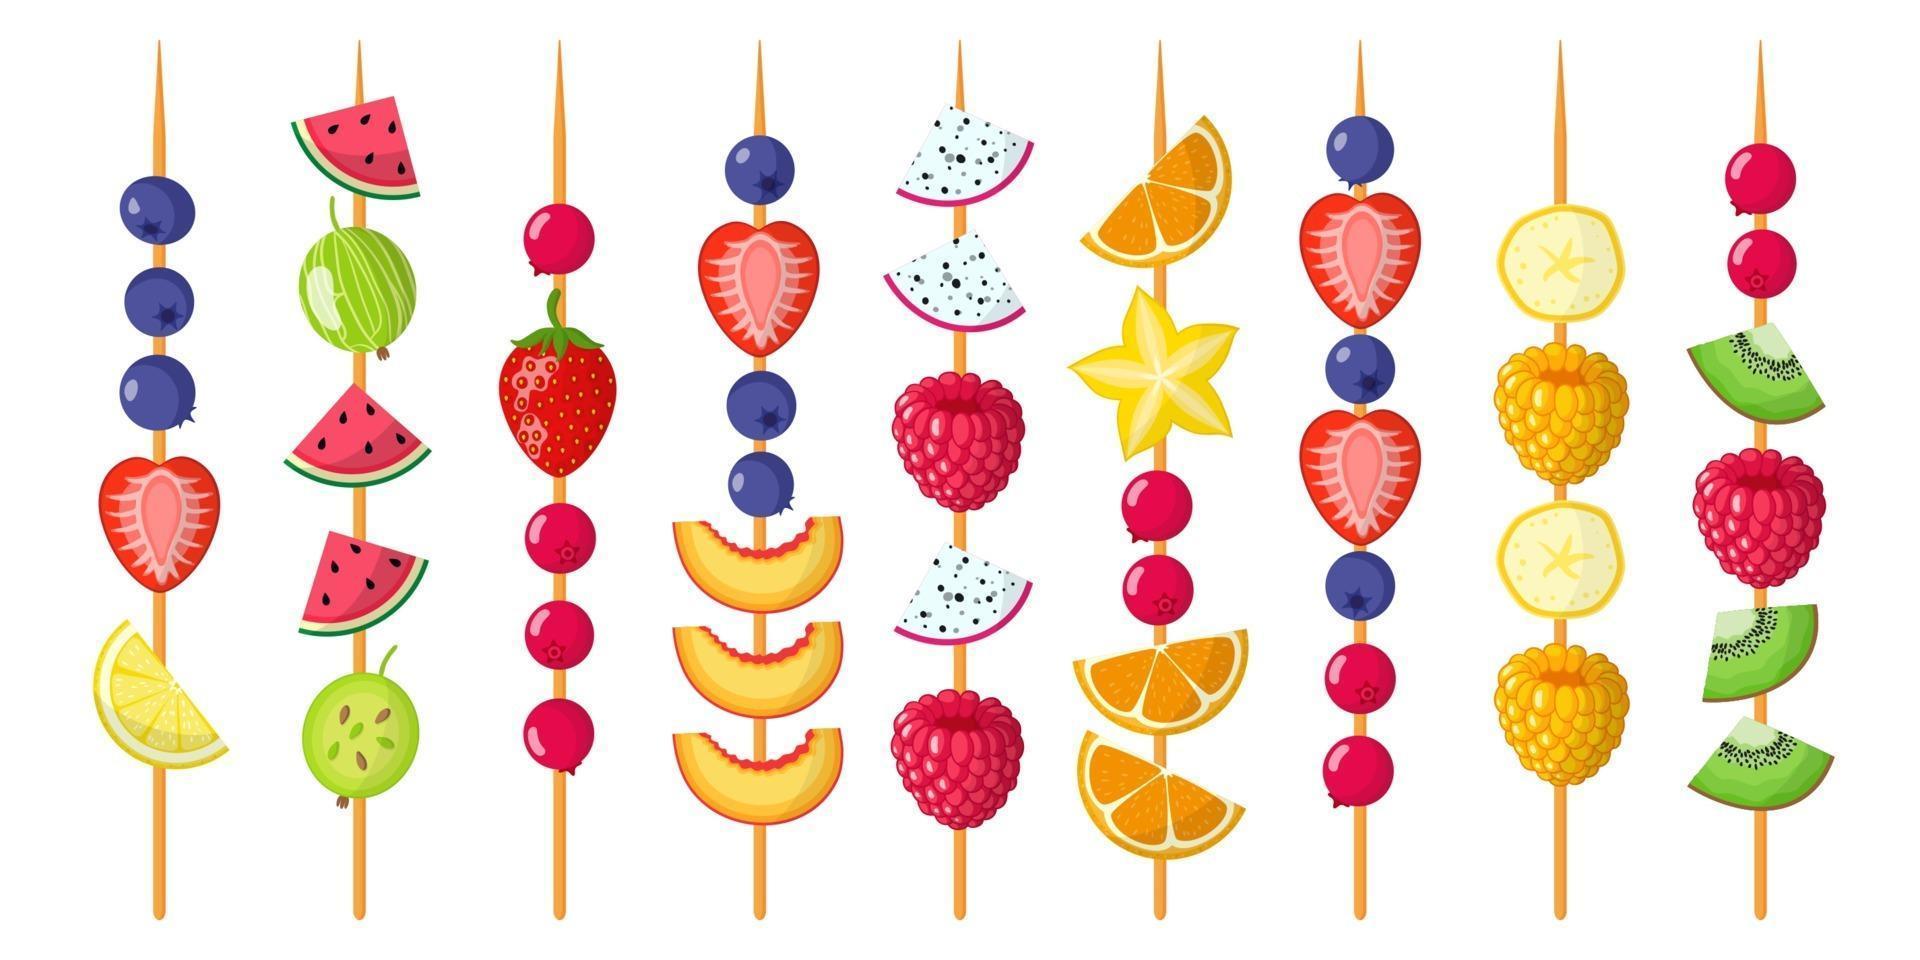 fruktkanapéer blandas på träspett. jordgubbar, blåbär, hallon, vattenmelon, kiwi, banan, mandarin. vektor